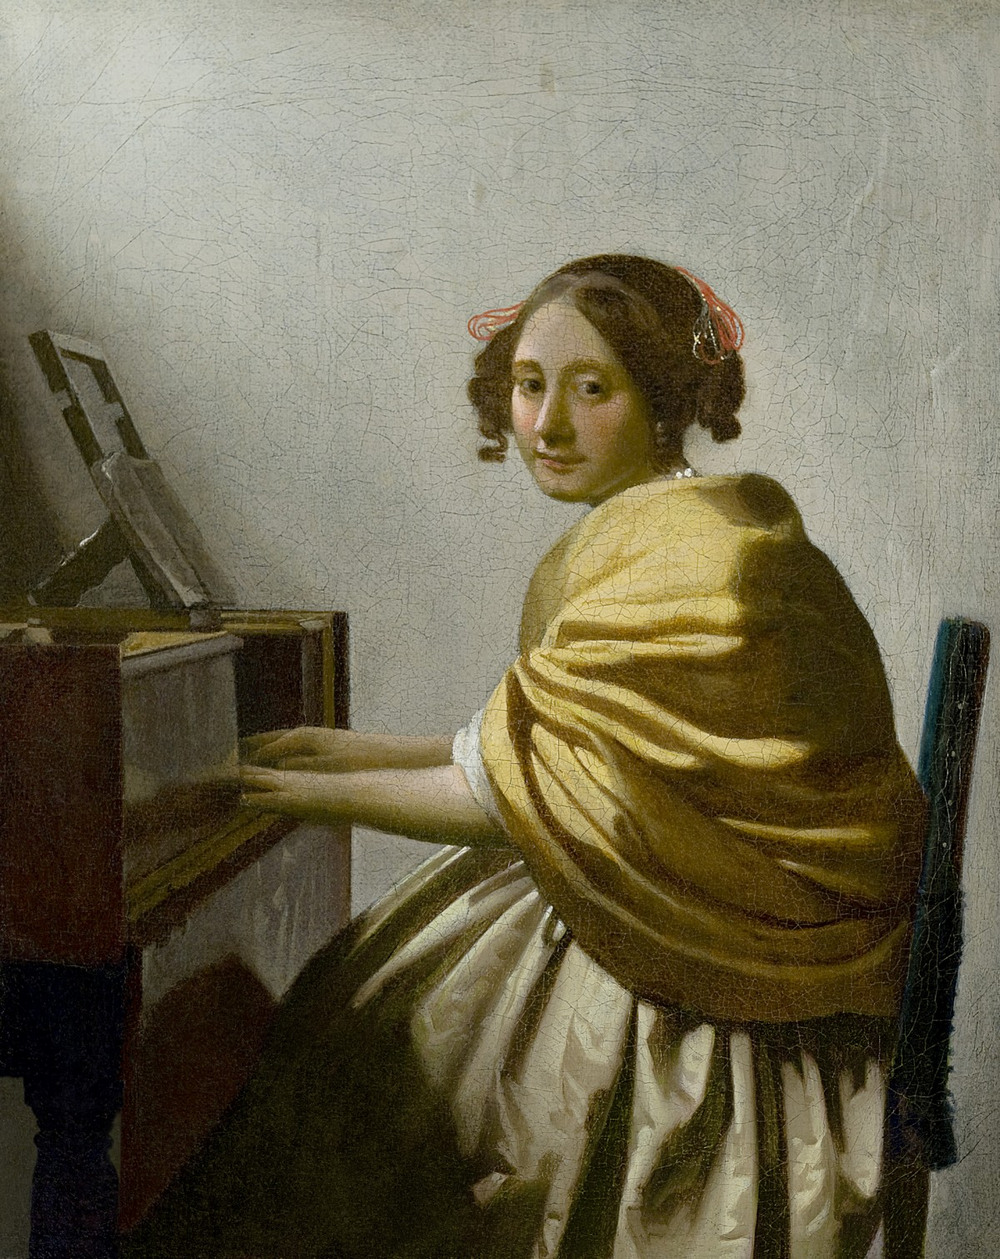 Лейденская коллекция доступна онлайн. Частный коллекционер опубликовал картины золотого века голландской живописи  18